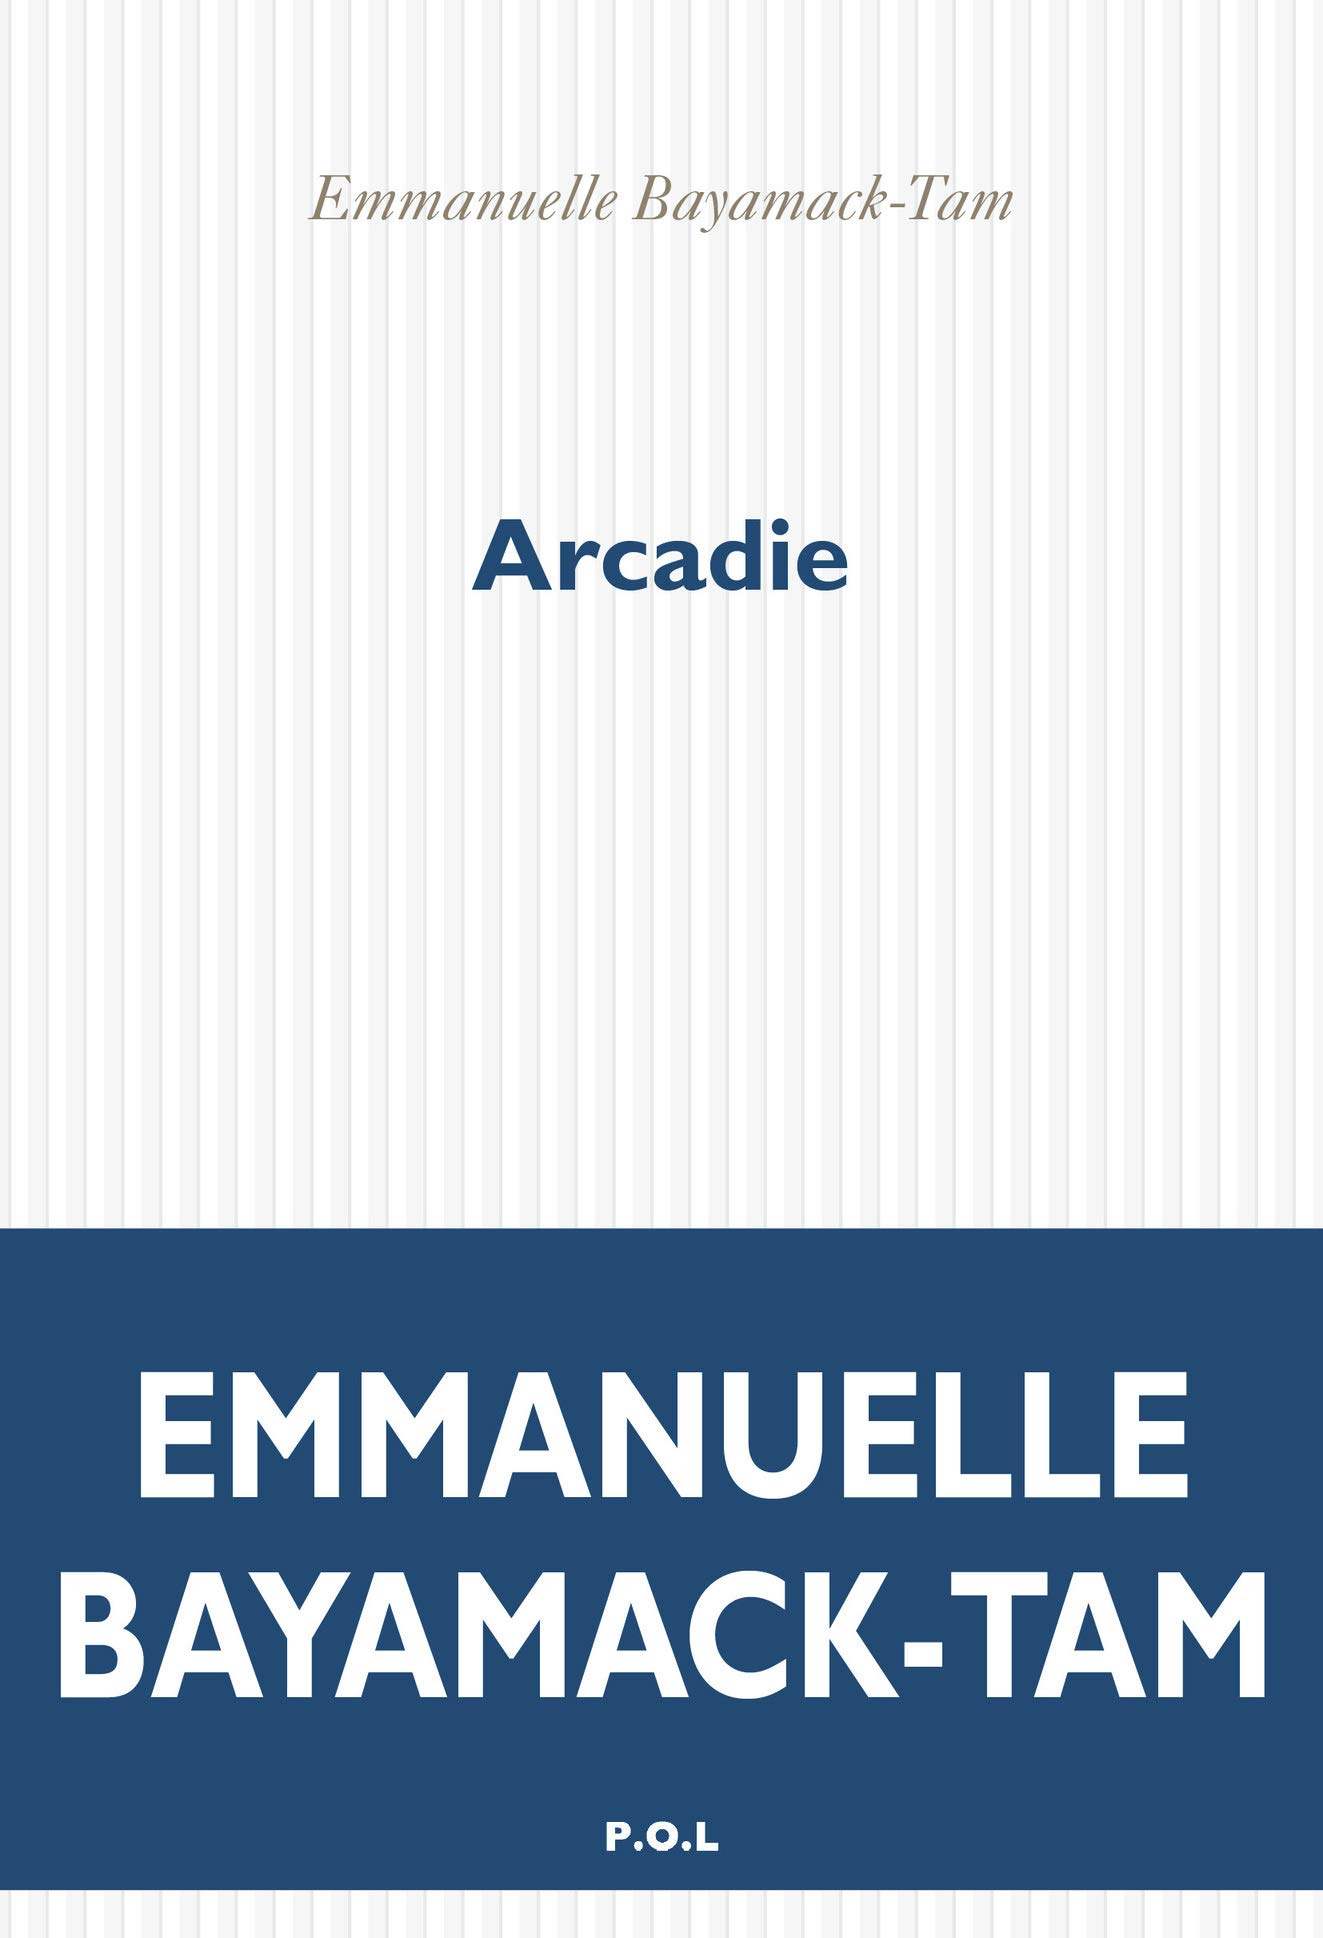 couverture de Arcadie d'Emmanuelle Bayamack-Tan